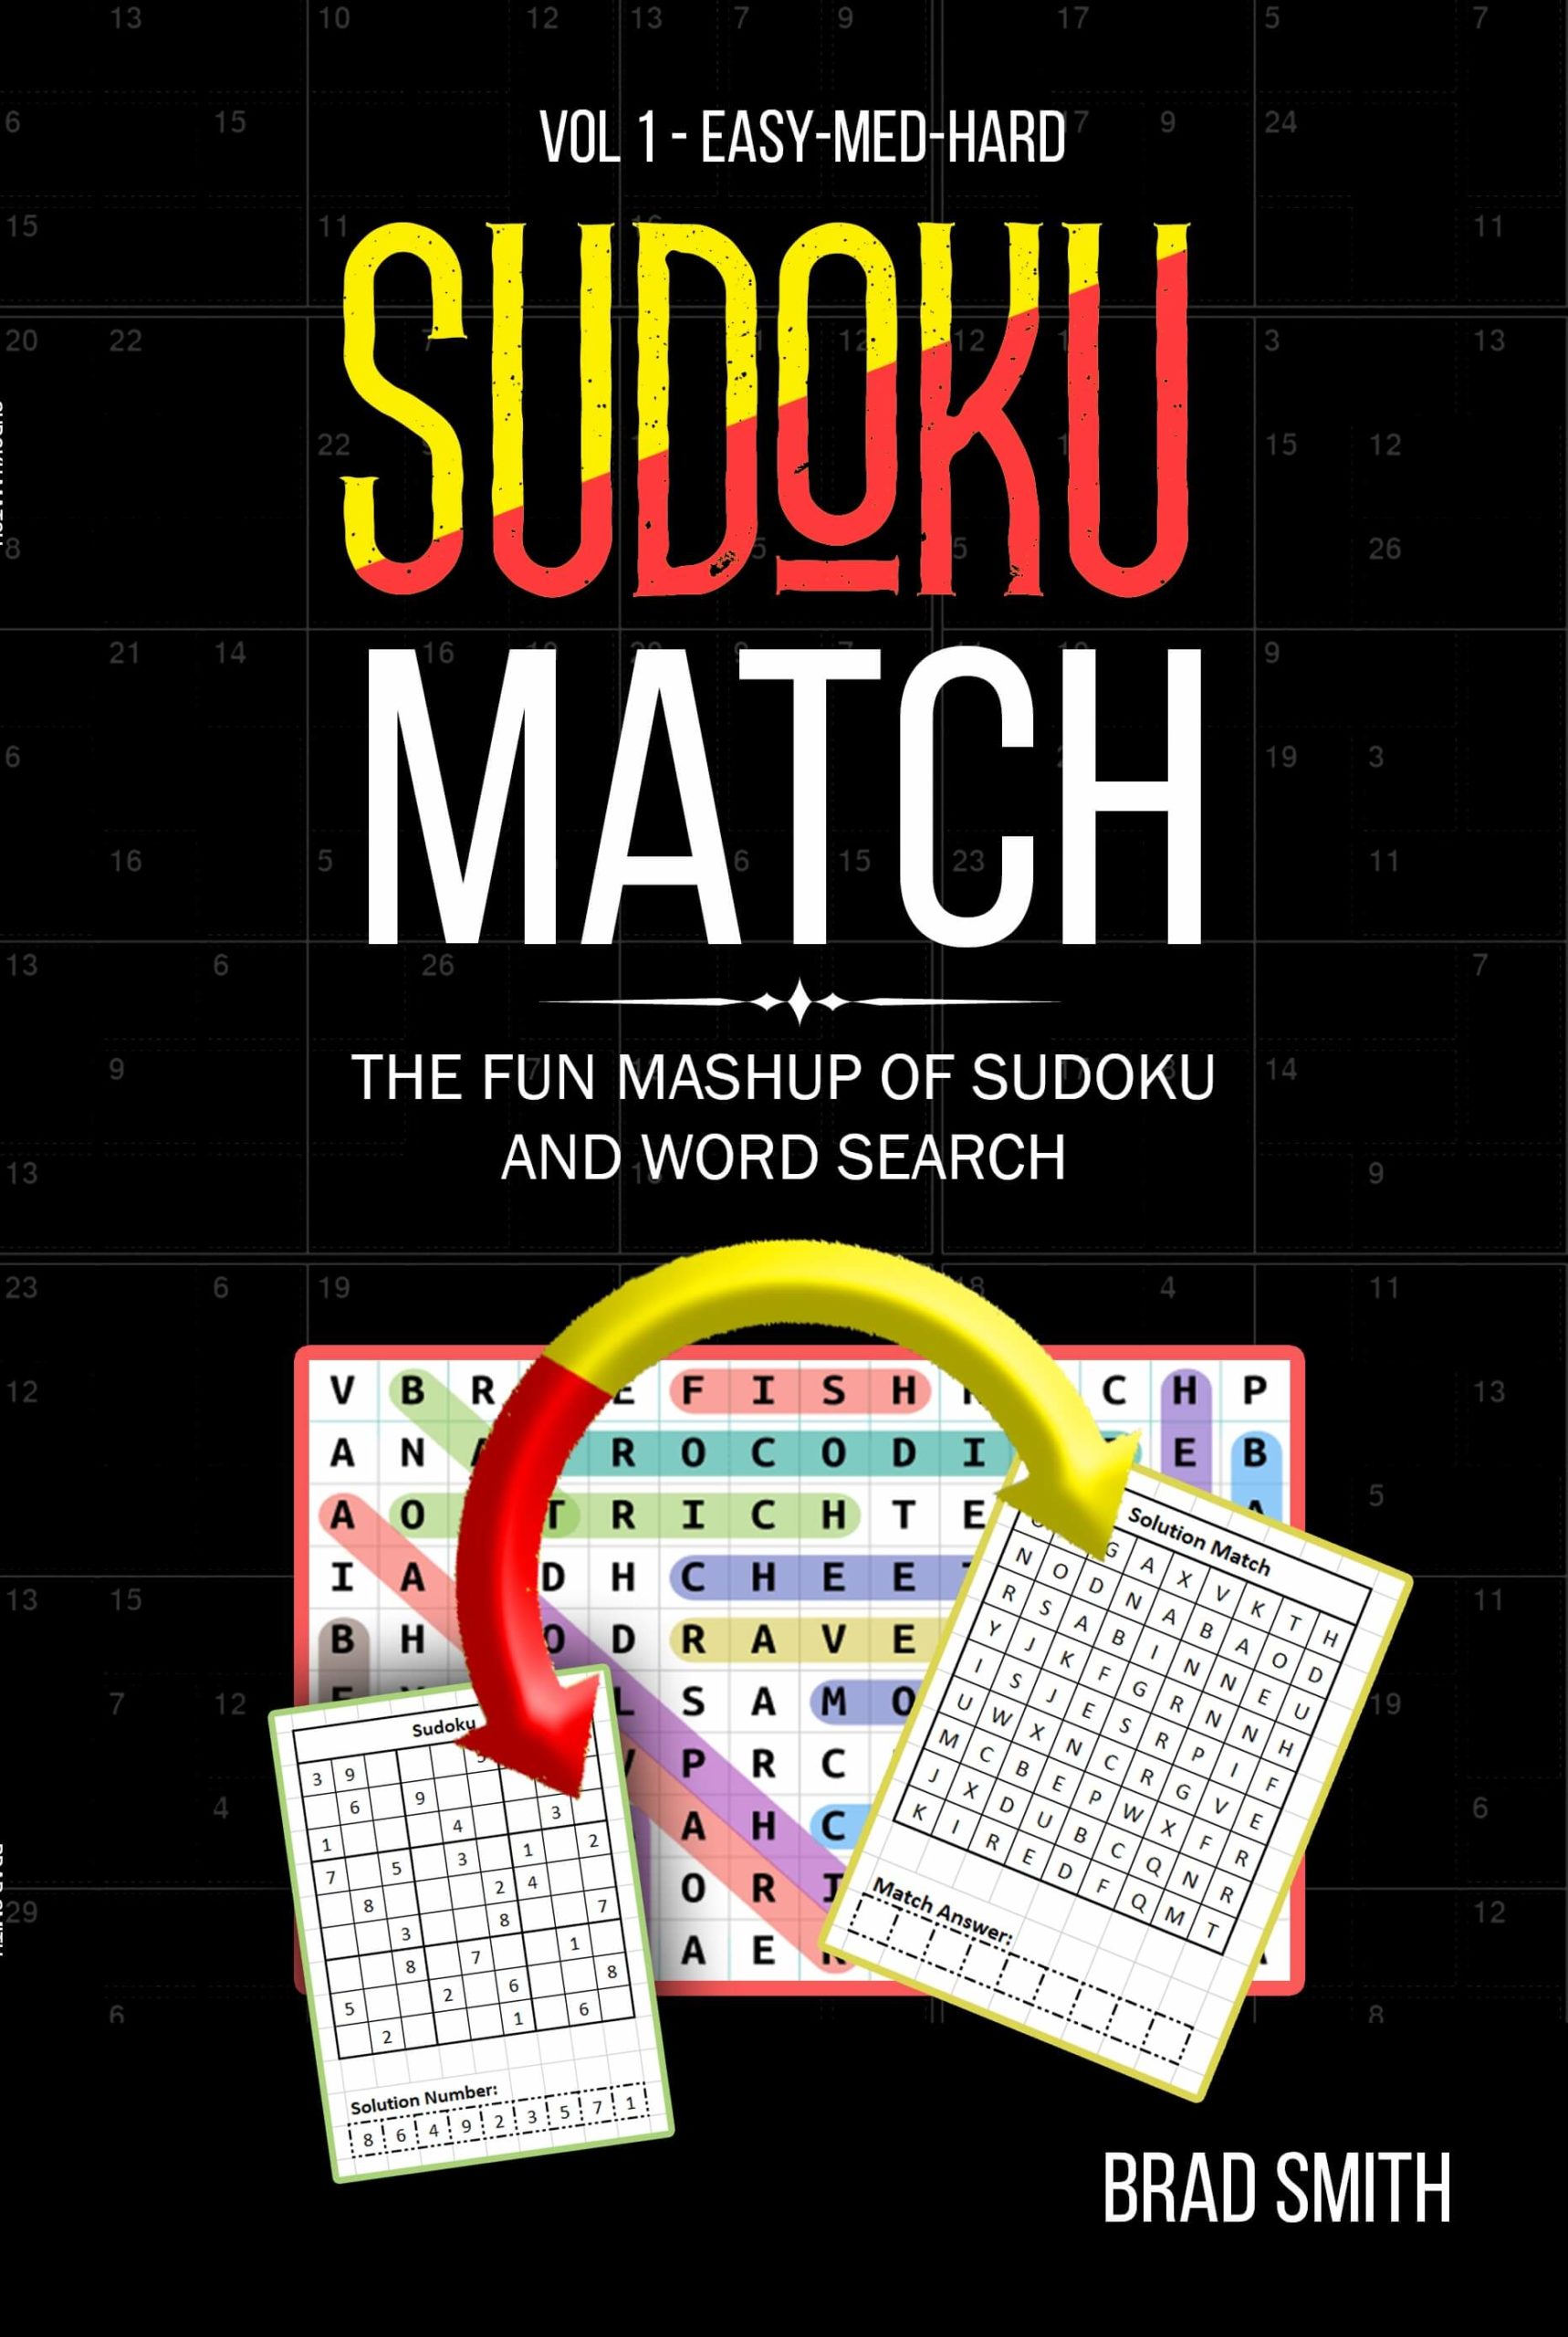 Sudoku Match vol 1 easy-med-hard